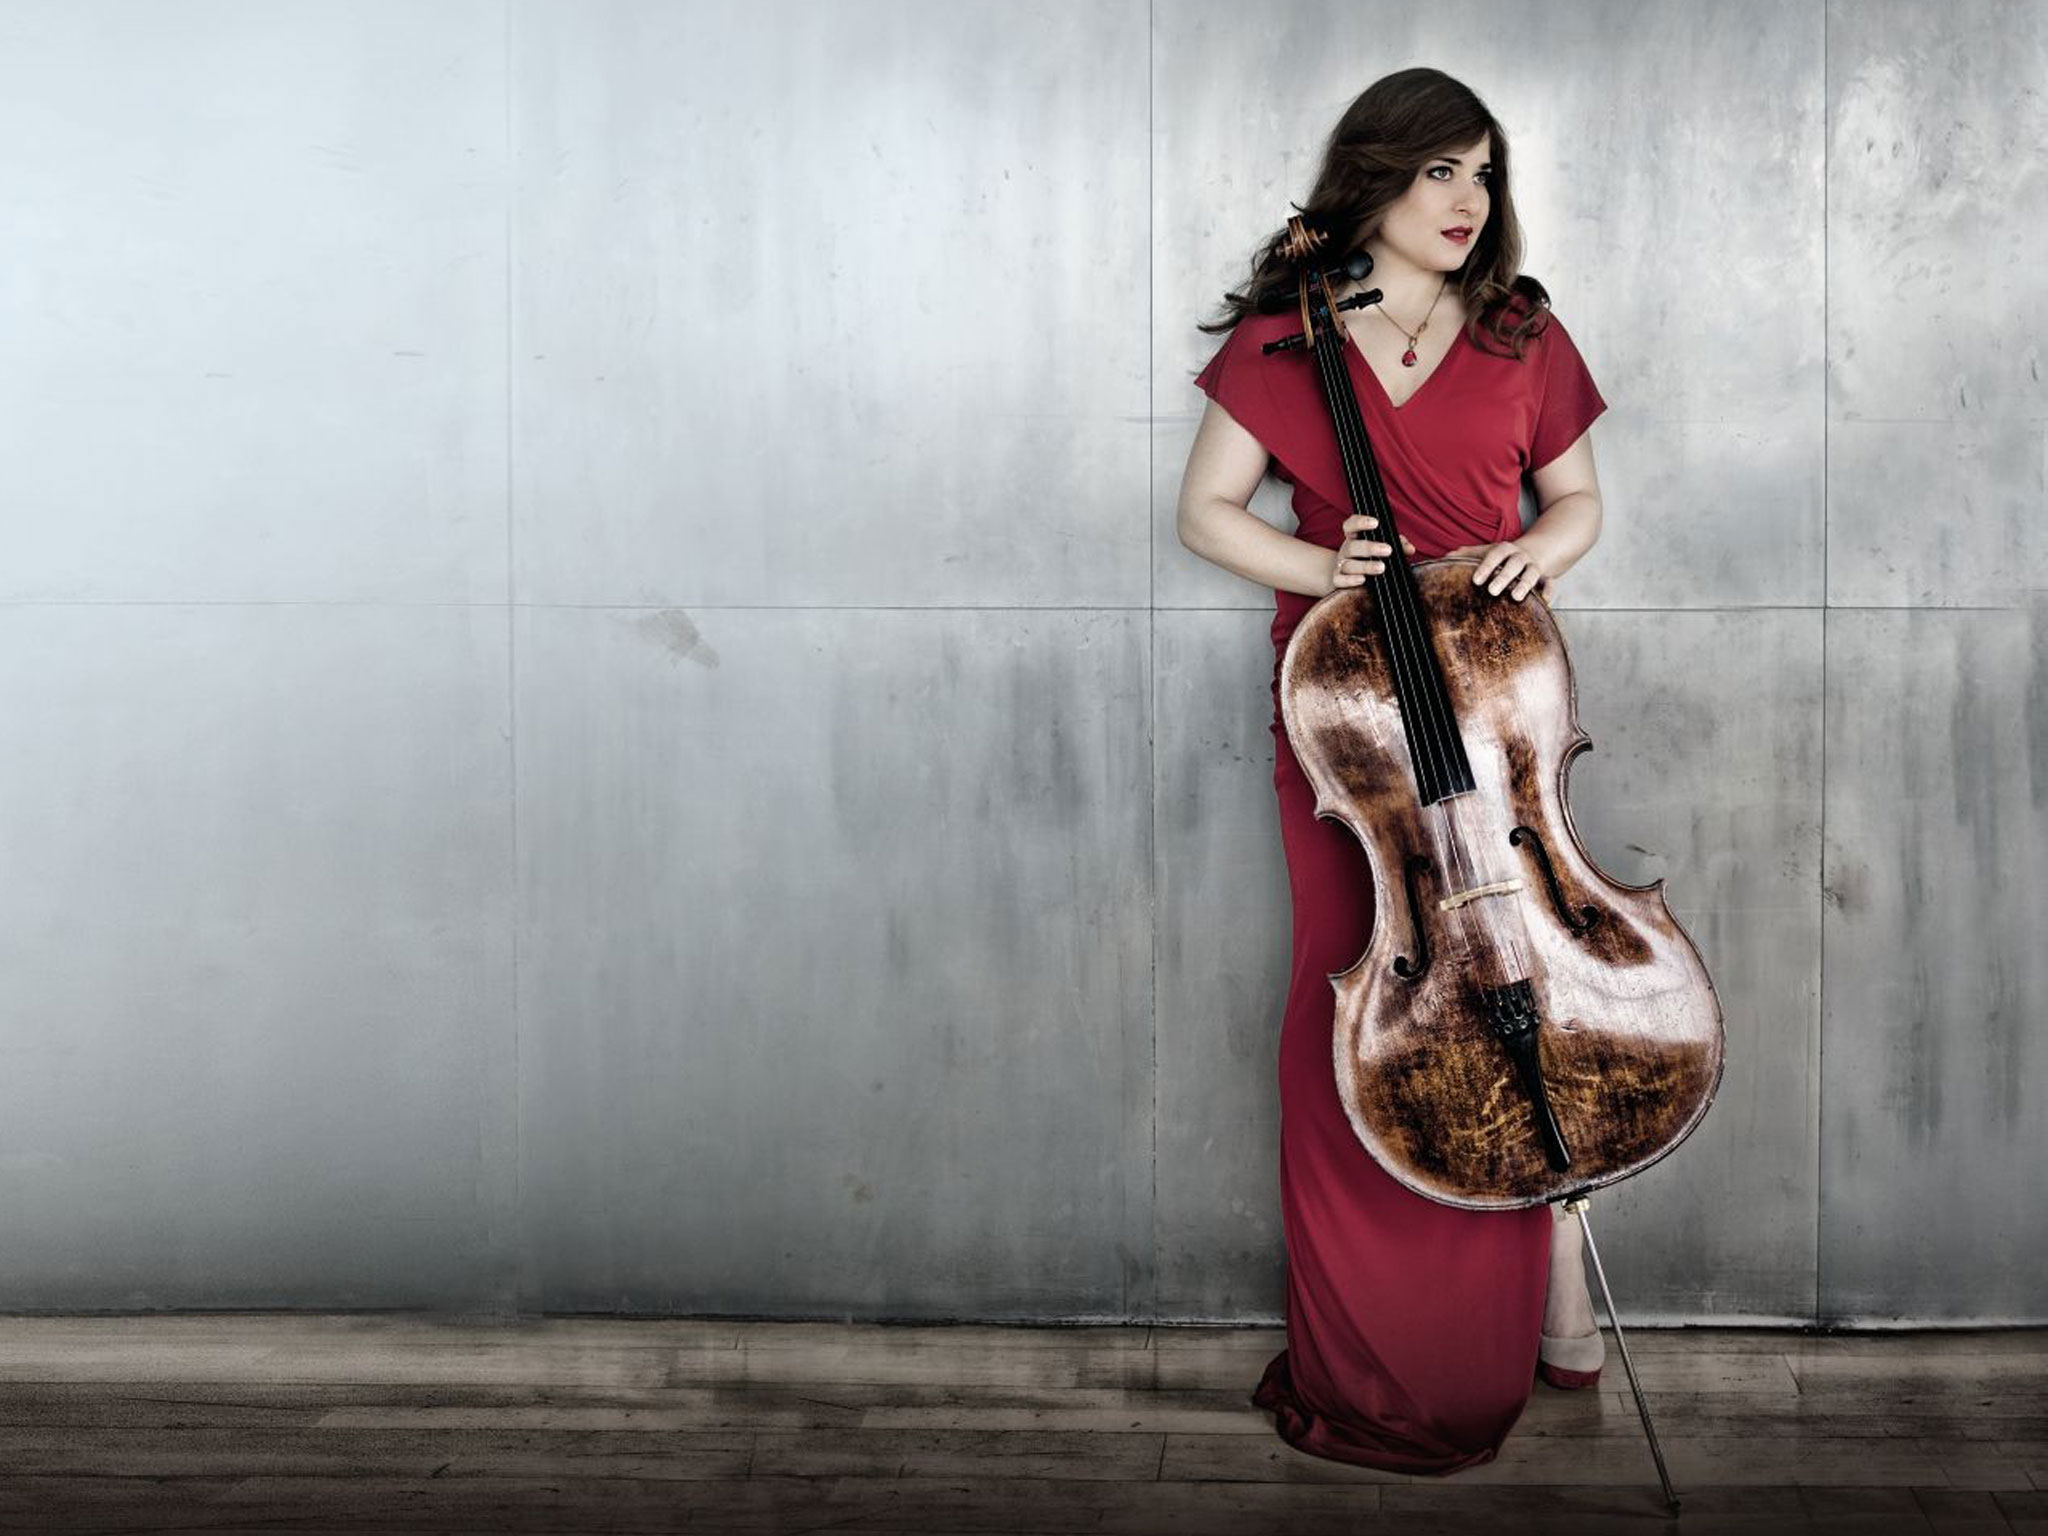 Cellist Alisa Weilerstein posing with cello